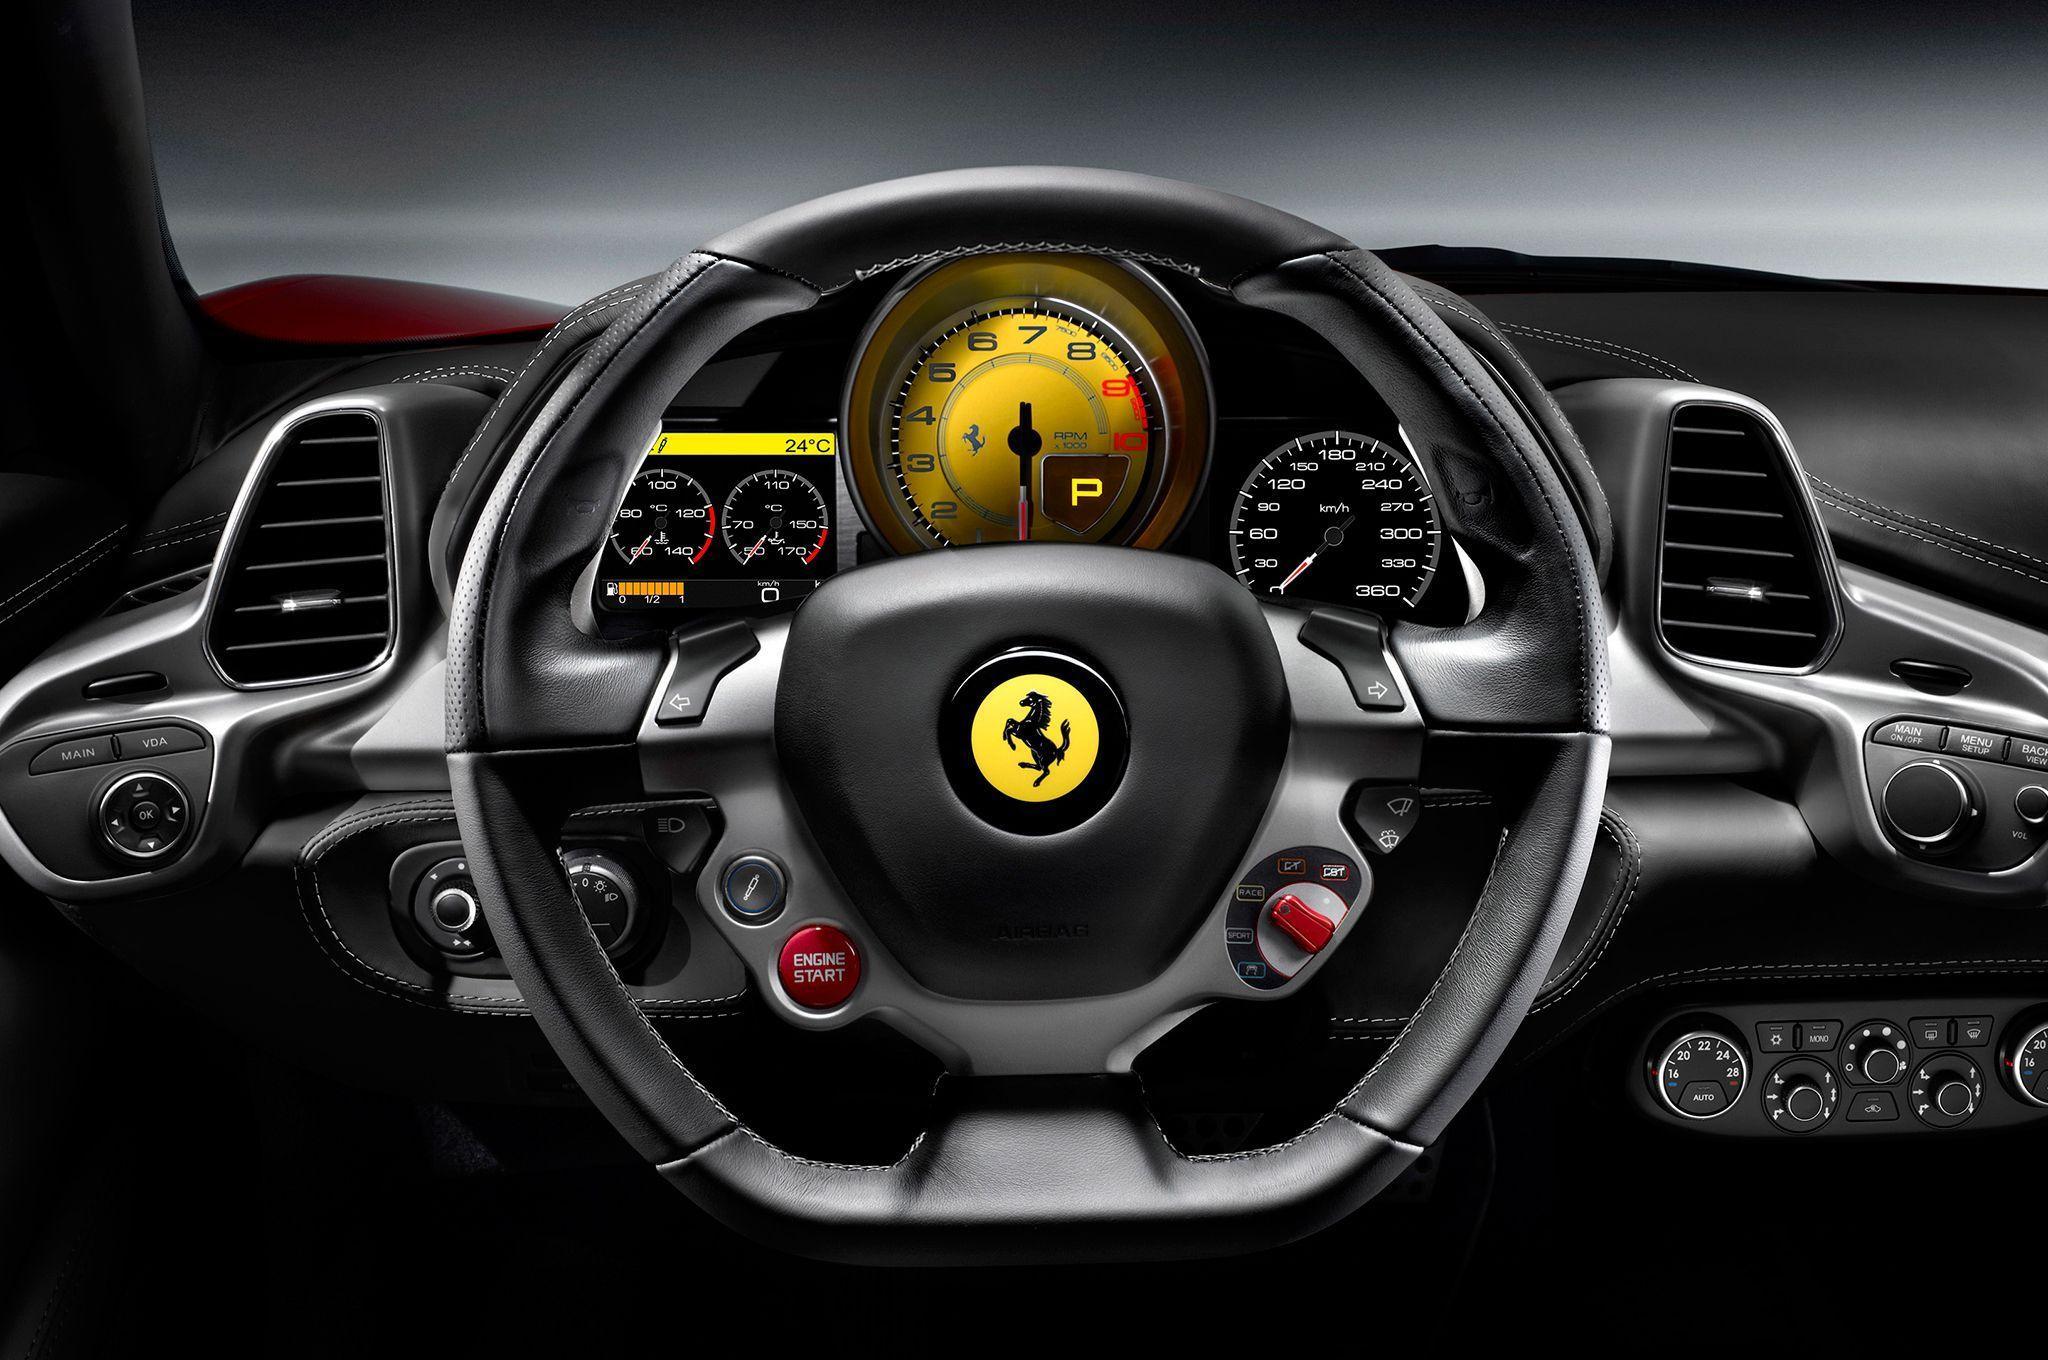 Ferrari 458 Italia Black Interior